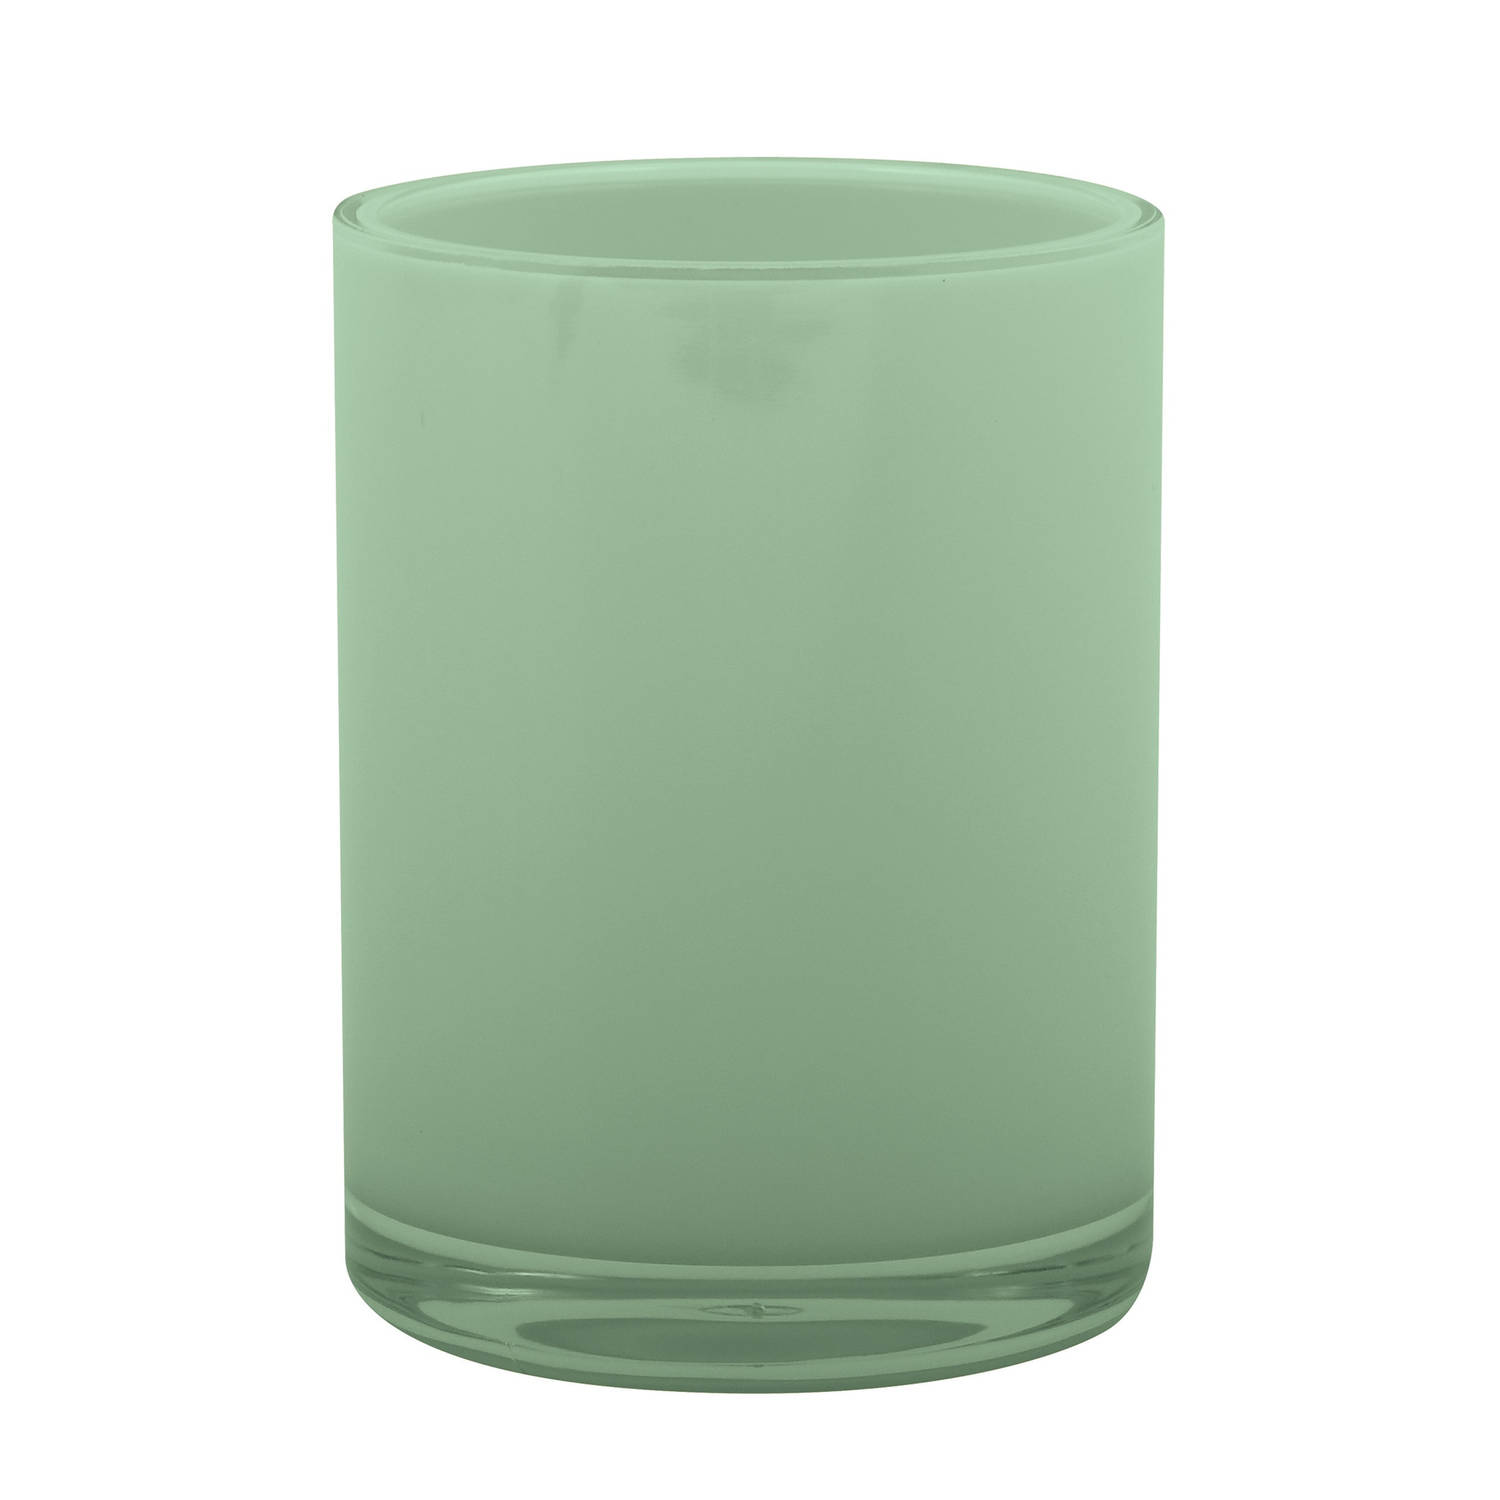 MSV Badkamer drinkbeker/tandenborstelhouder Aveiro - PS kunststof - groen - 7 x 9 cm